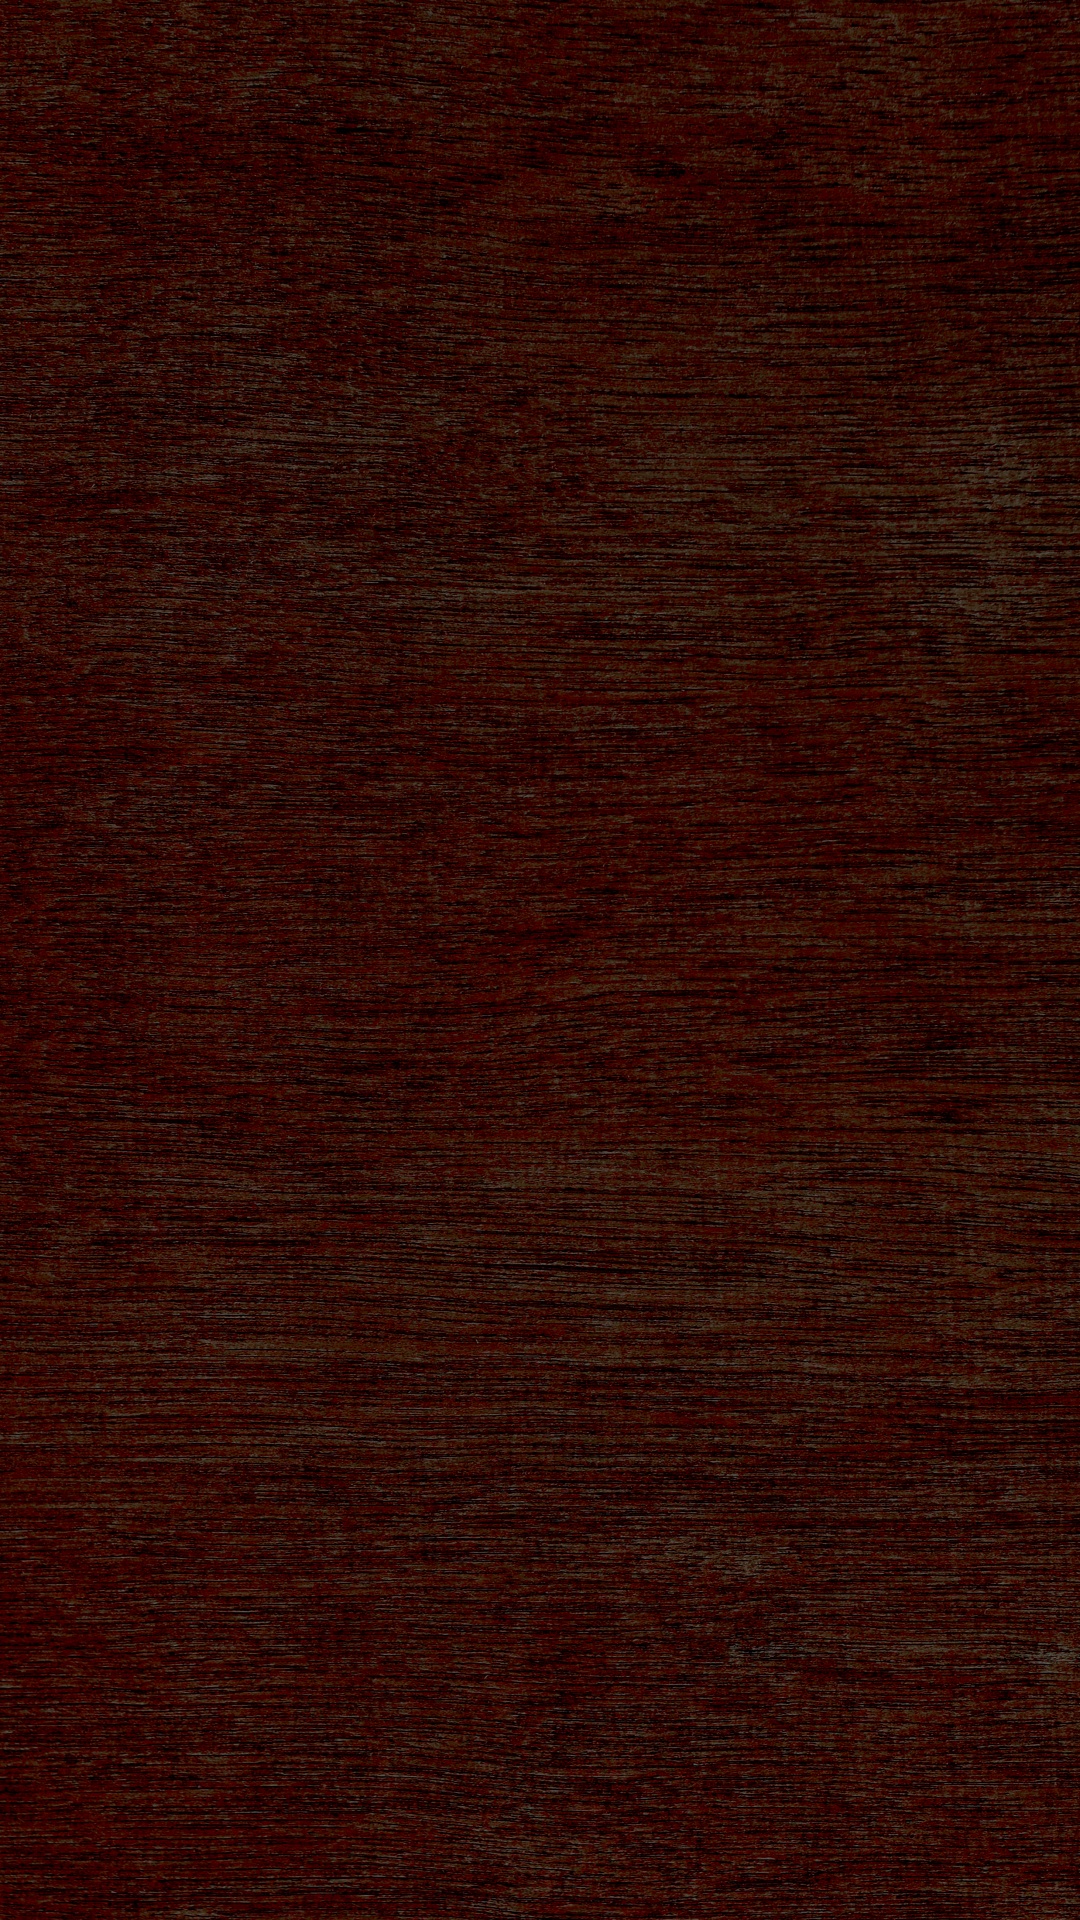 硬木, 木染色, 棕色, 木, 焦糖色素 壁纸 1080x1920 允许